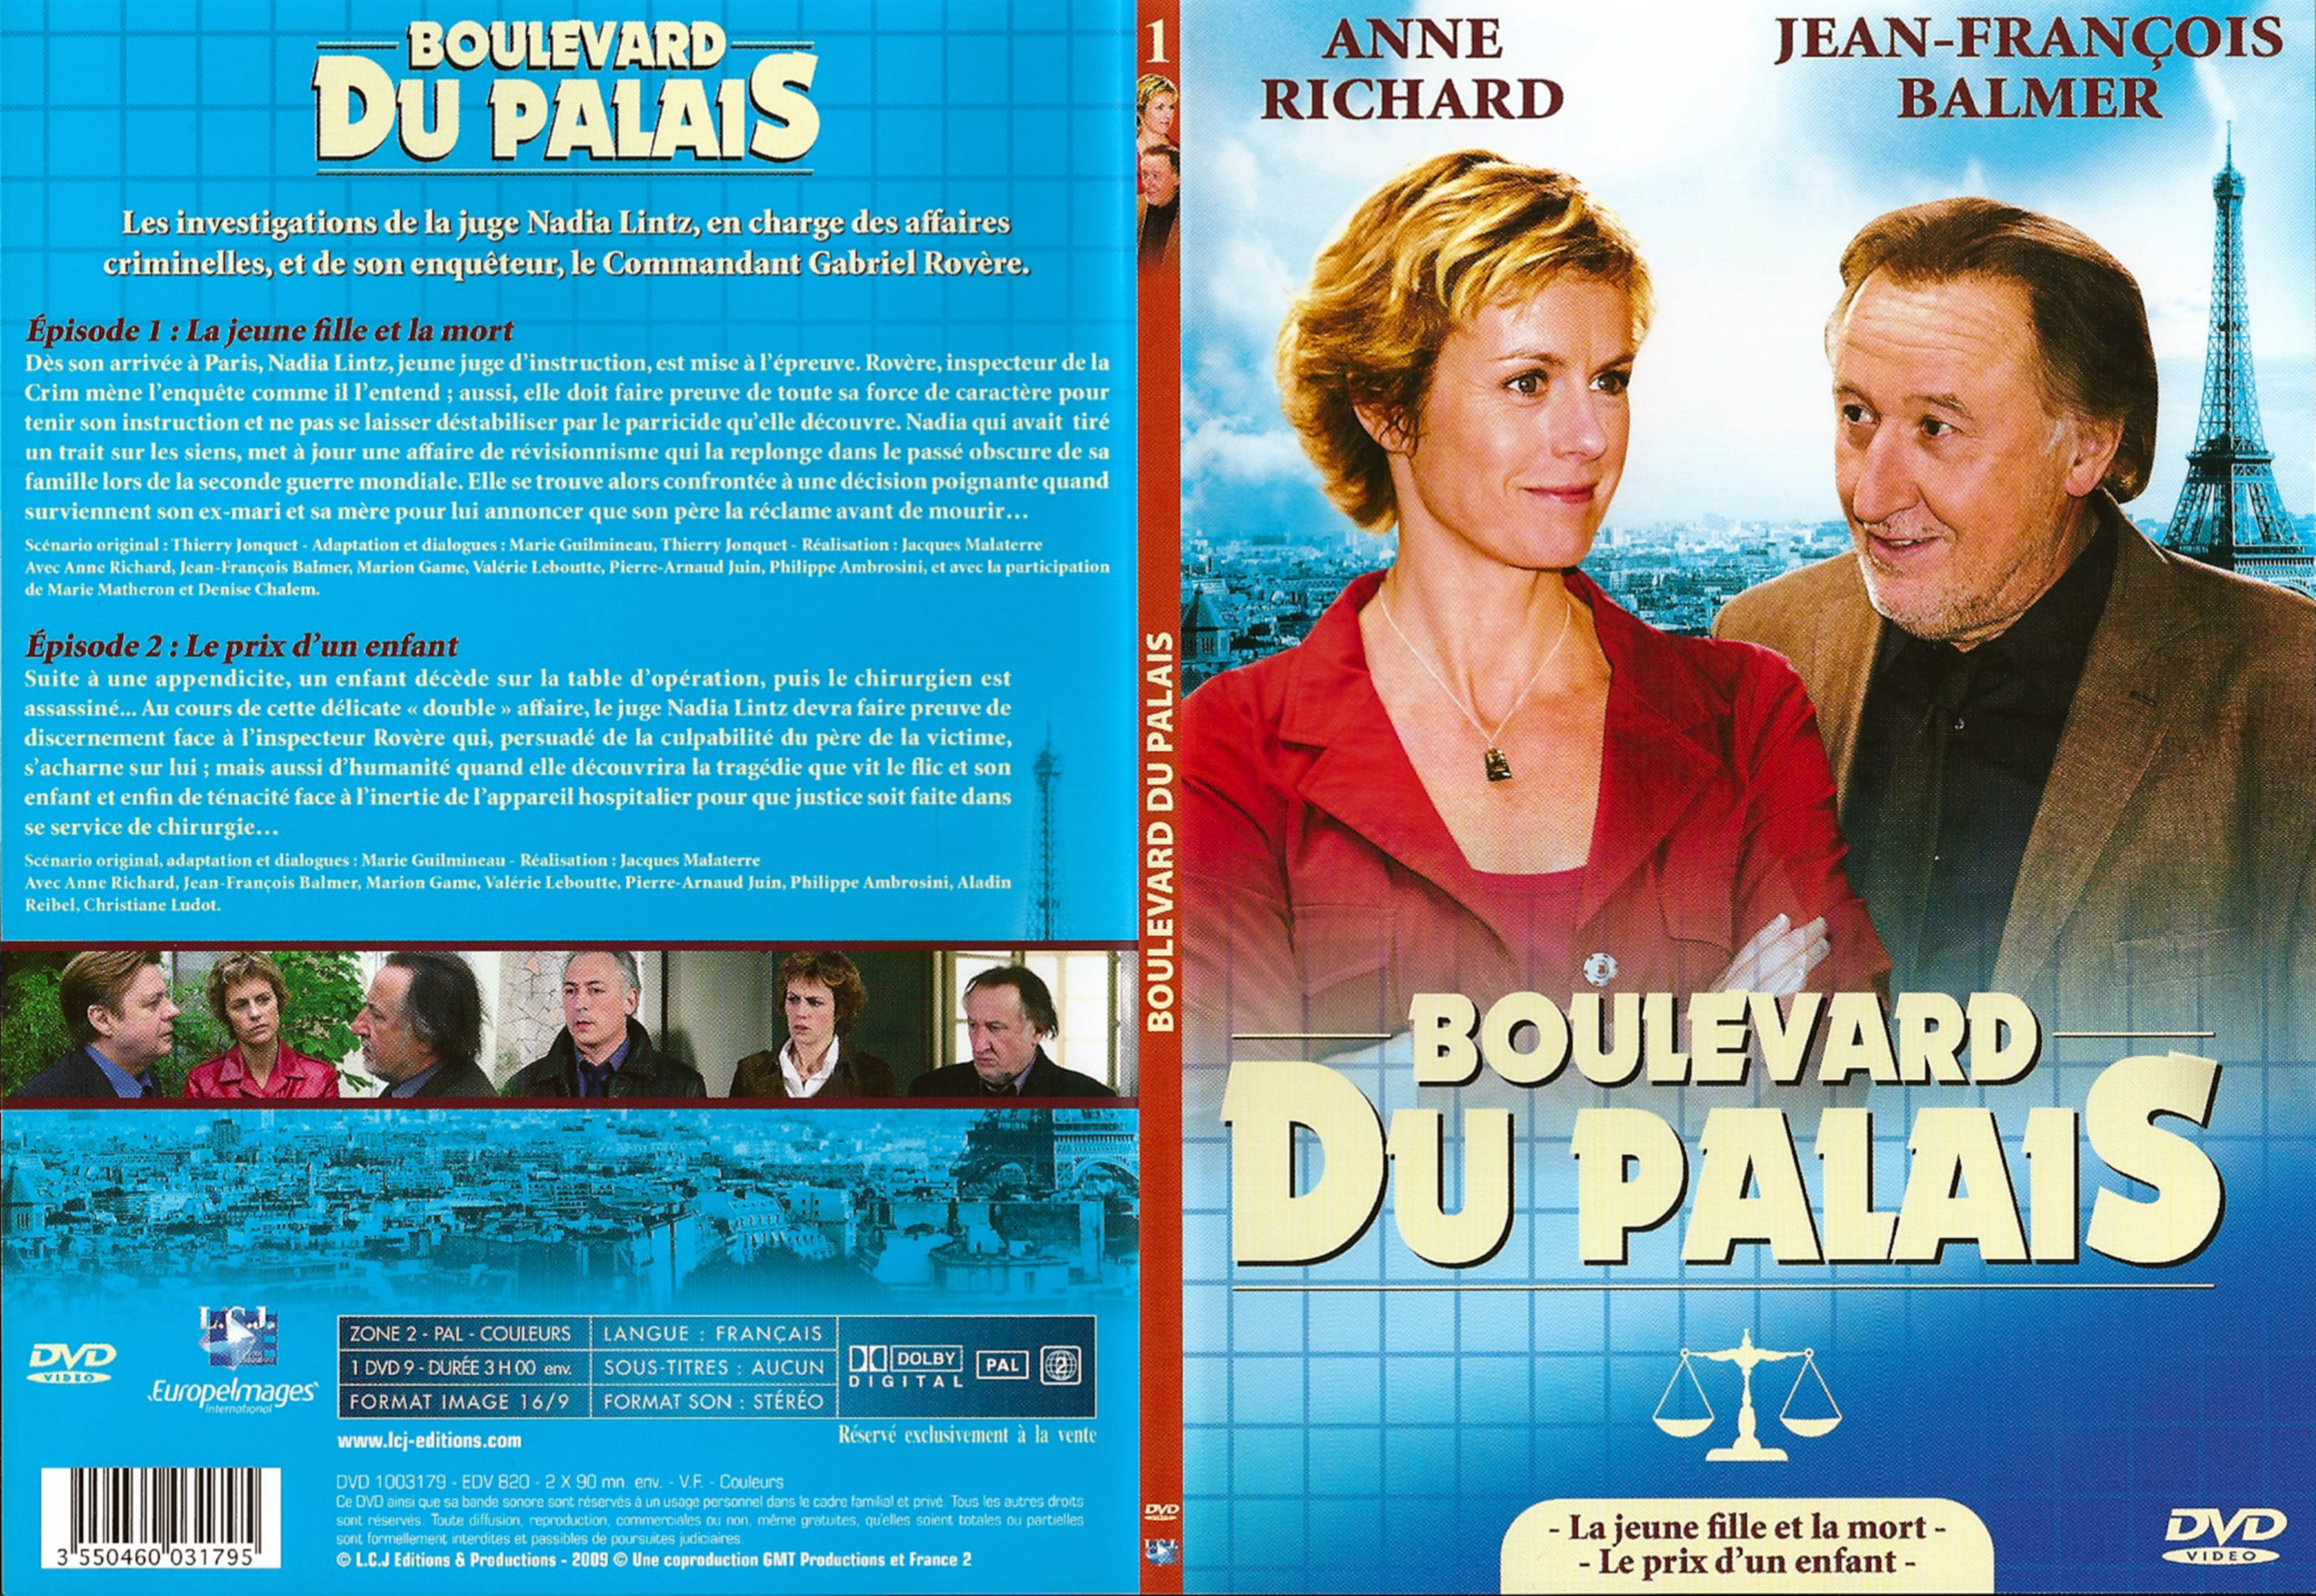 Jaquette DVD Boulevard du palais Saison 1 DVD 1